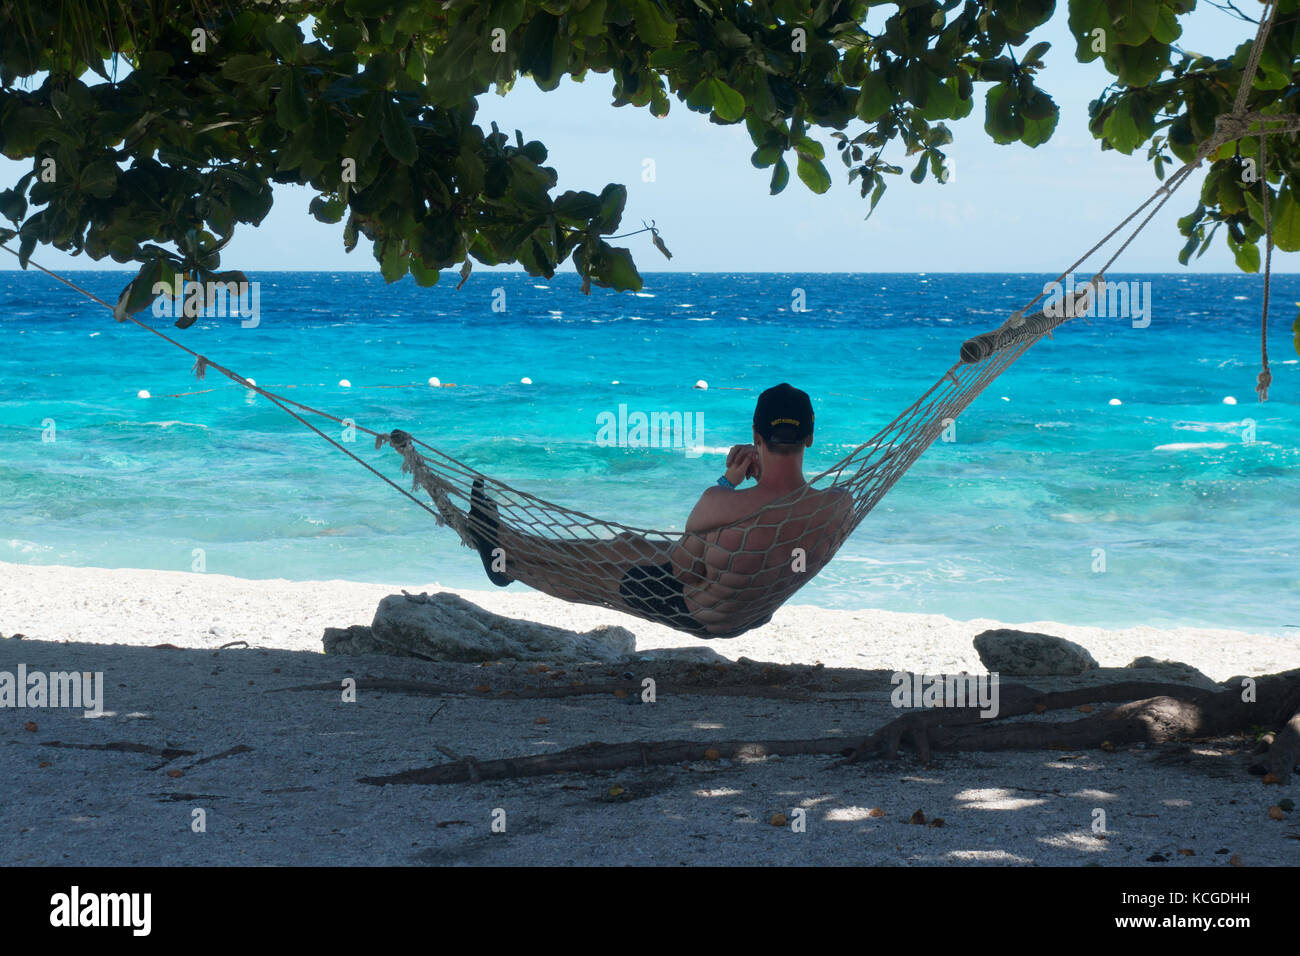 Playa de Filipinas, Isla de Cebú - Un turista que se relaja en una hamaca de vacaciones, Cebú, Filipinas, Asia Foto de stock